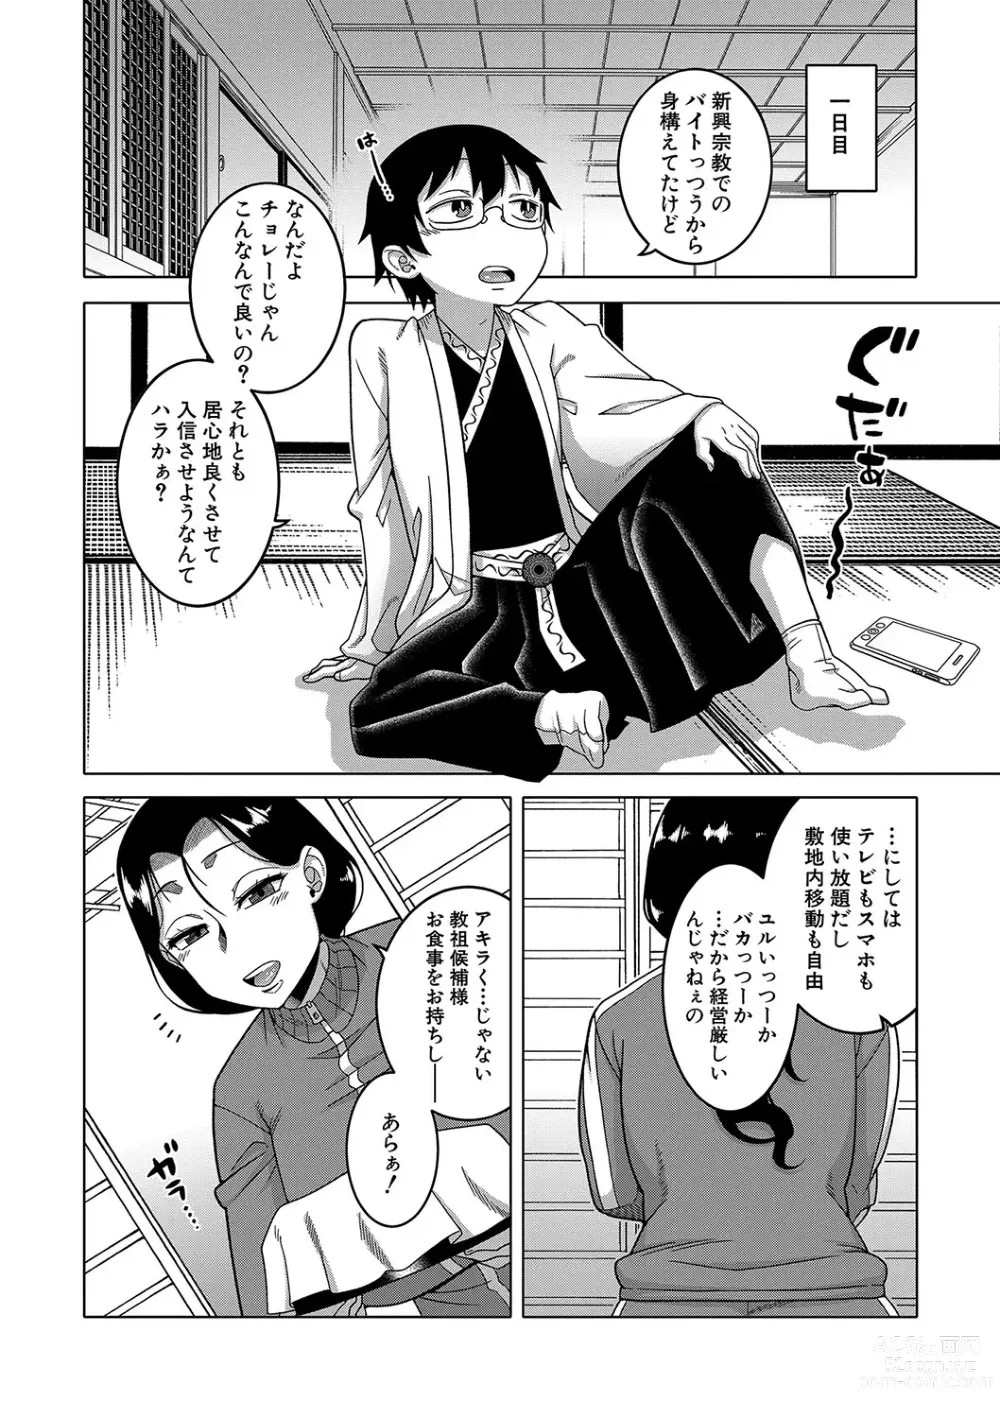 Page 13 of manga Kami-sama no Tsukurikata